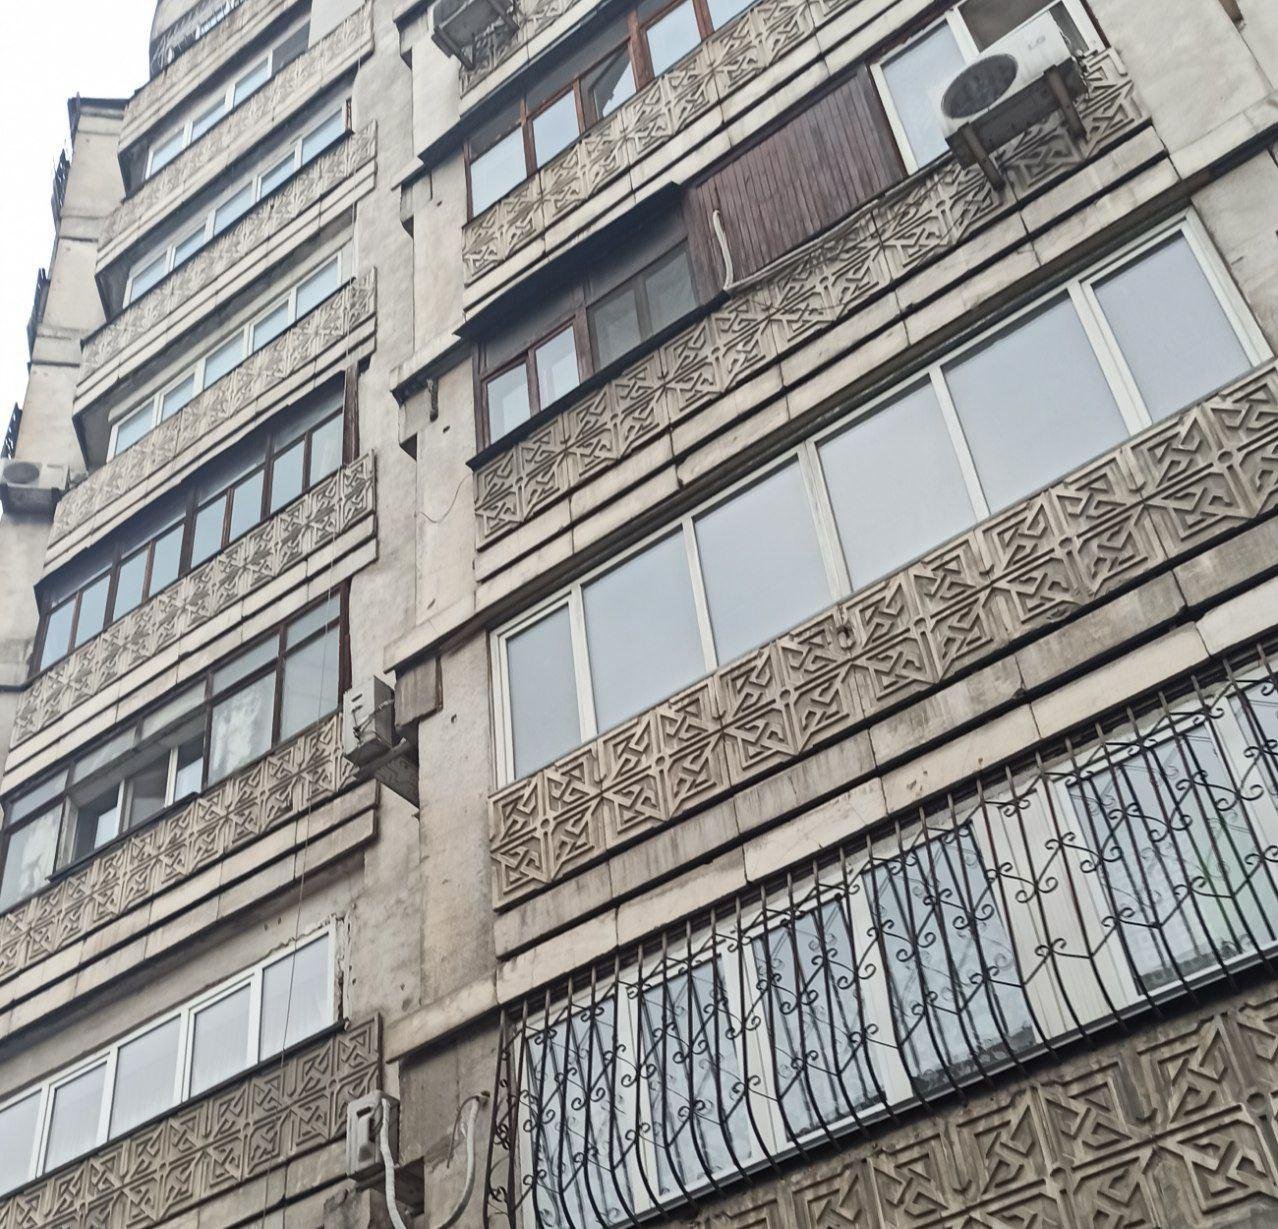 Рельефные панели на жилых домах — частый элемент Алматинского стиля